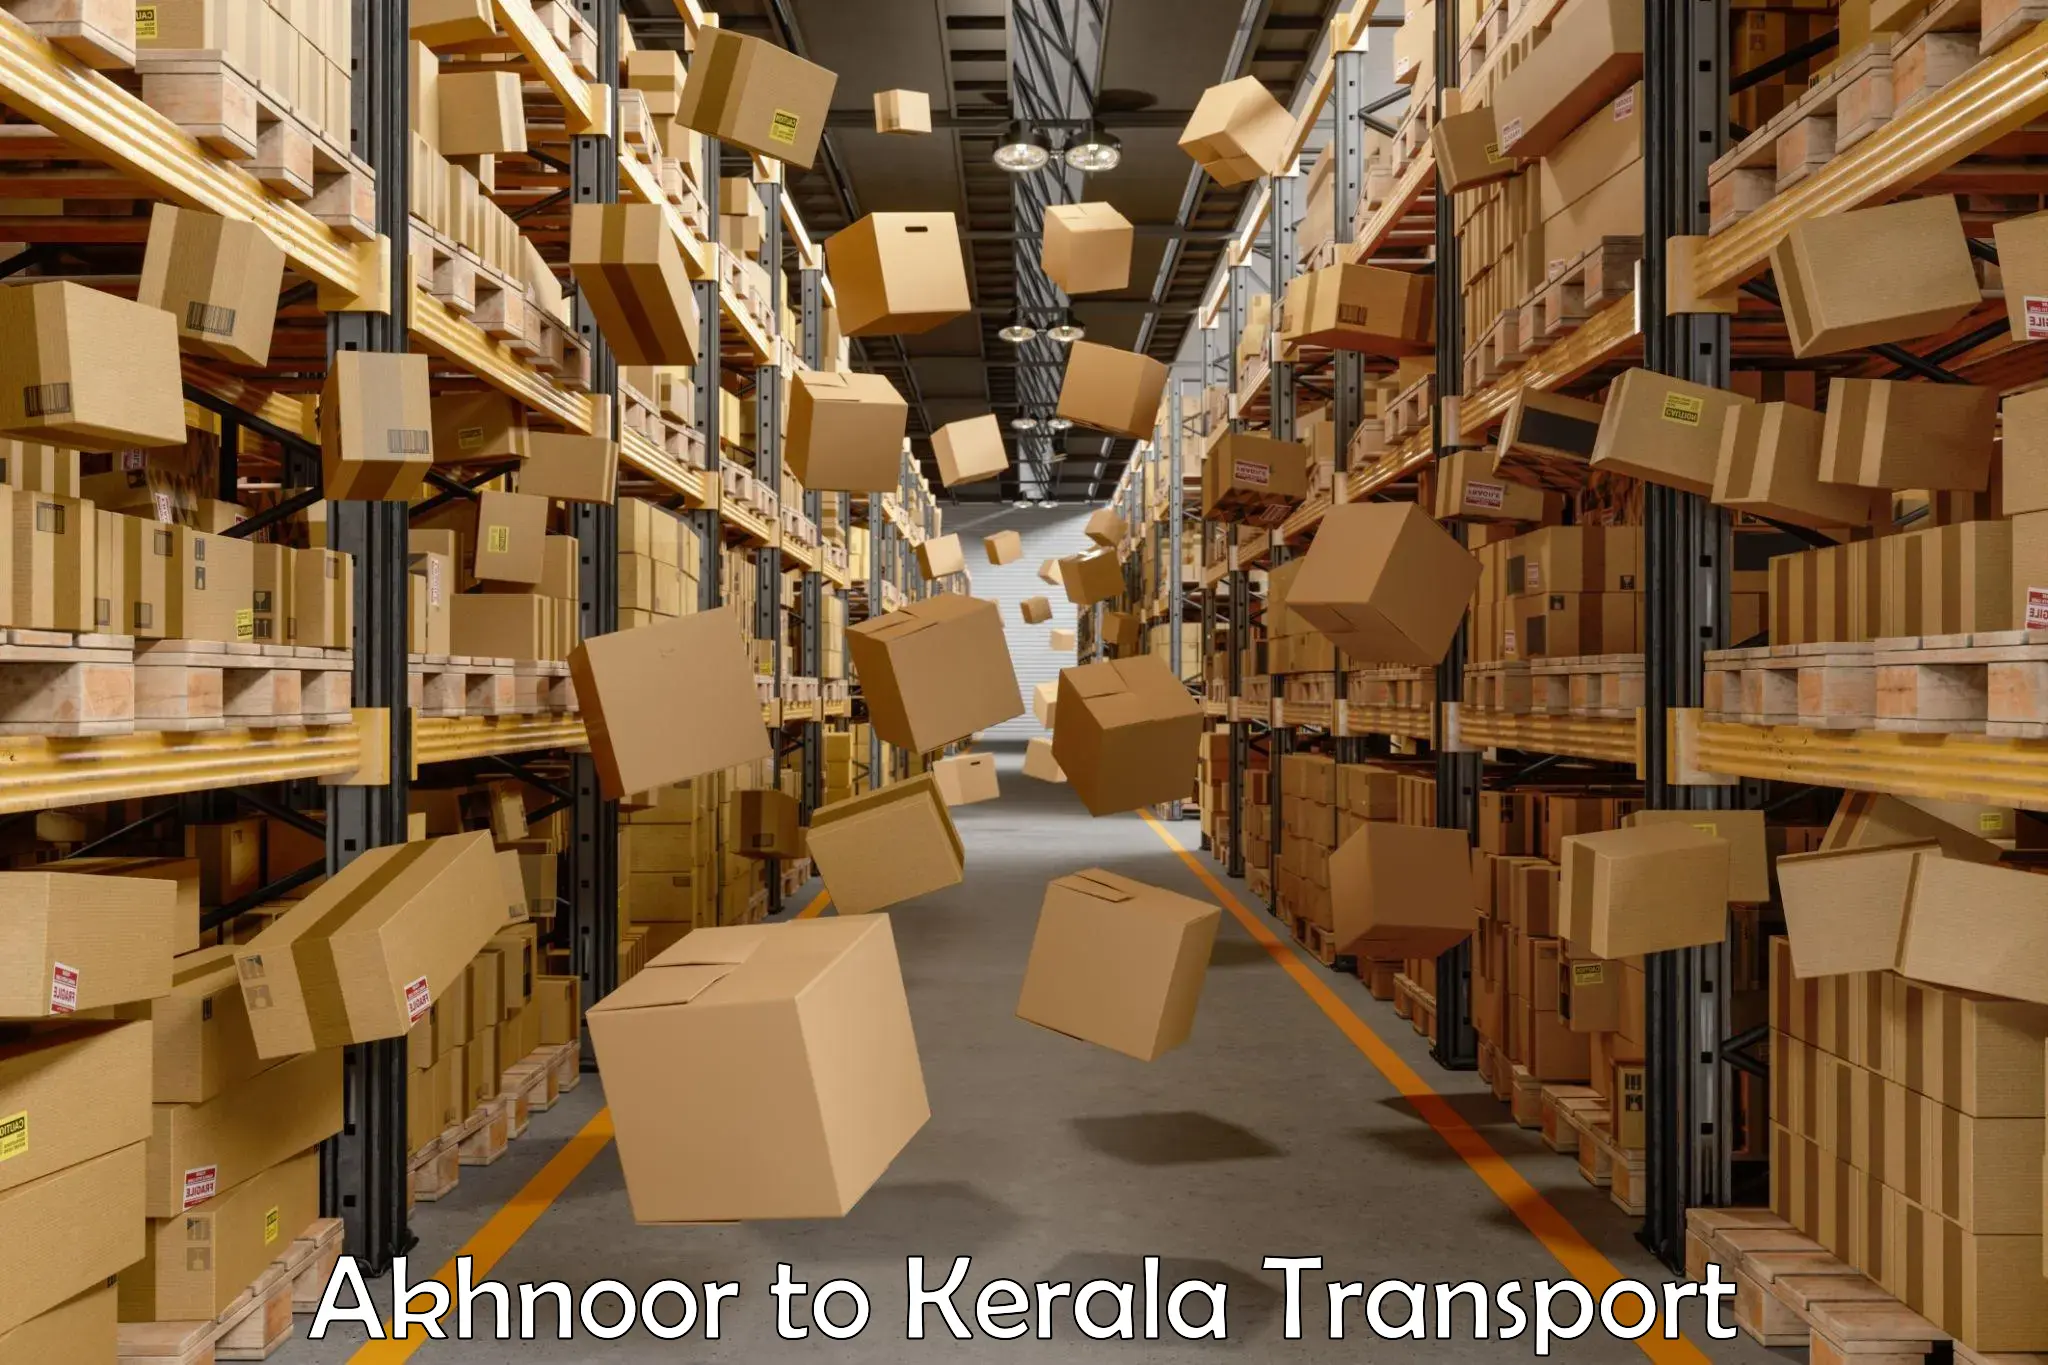 Door to door transport services Akhnoor to Parappa